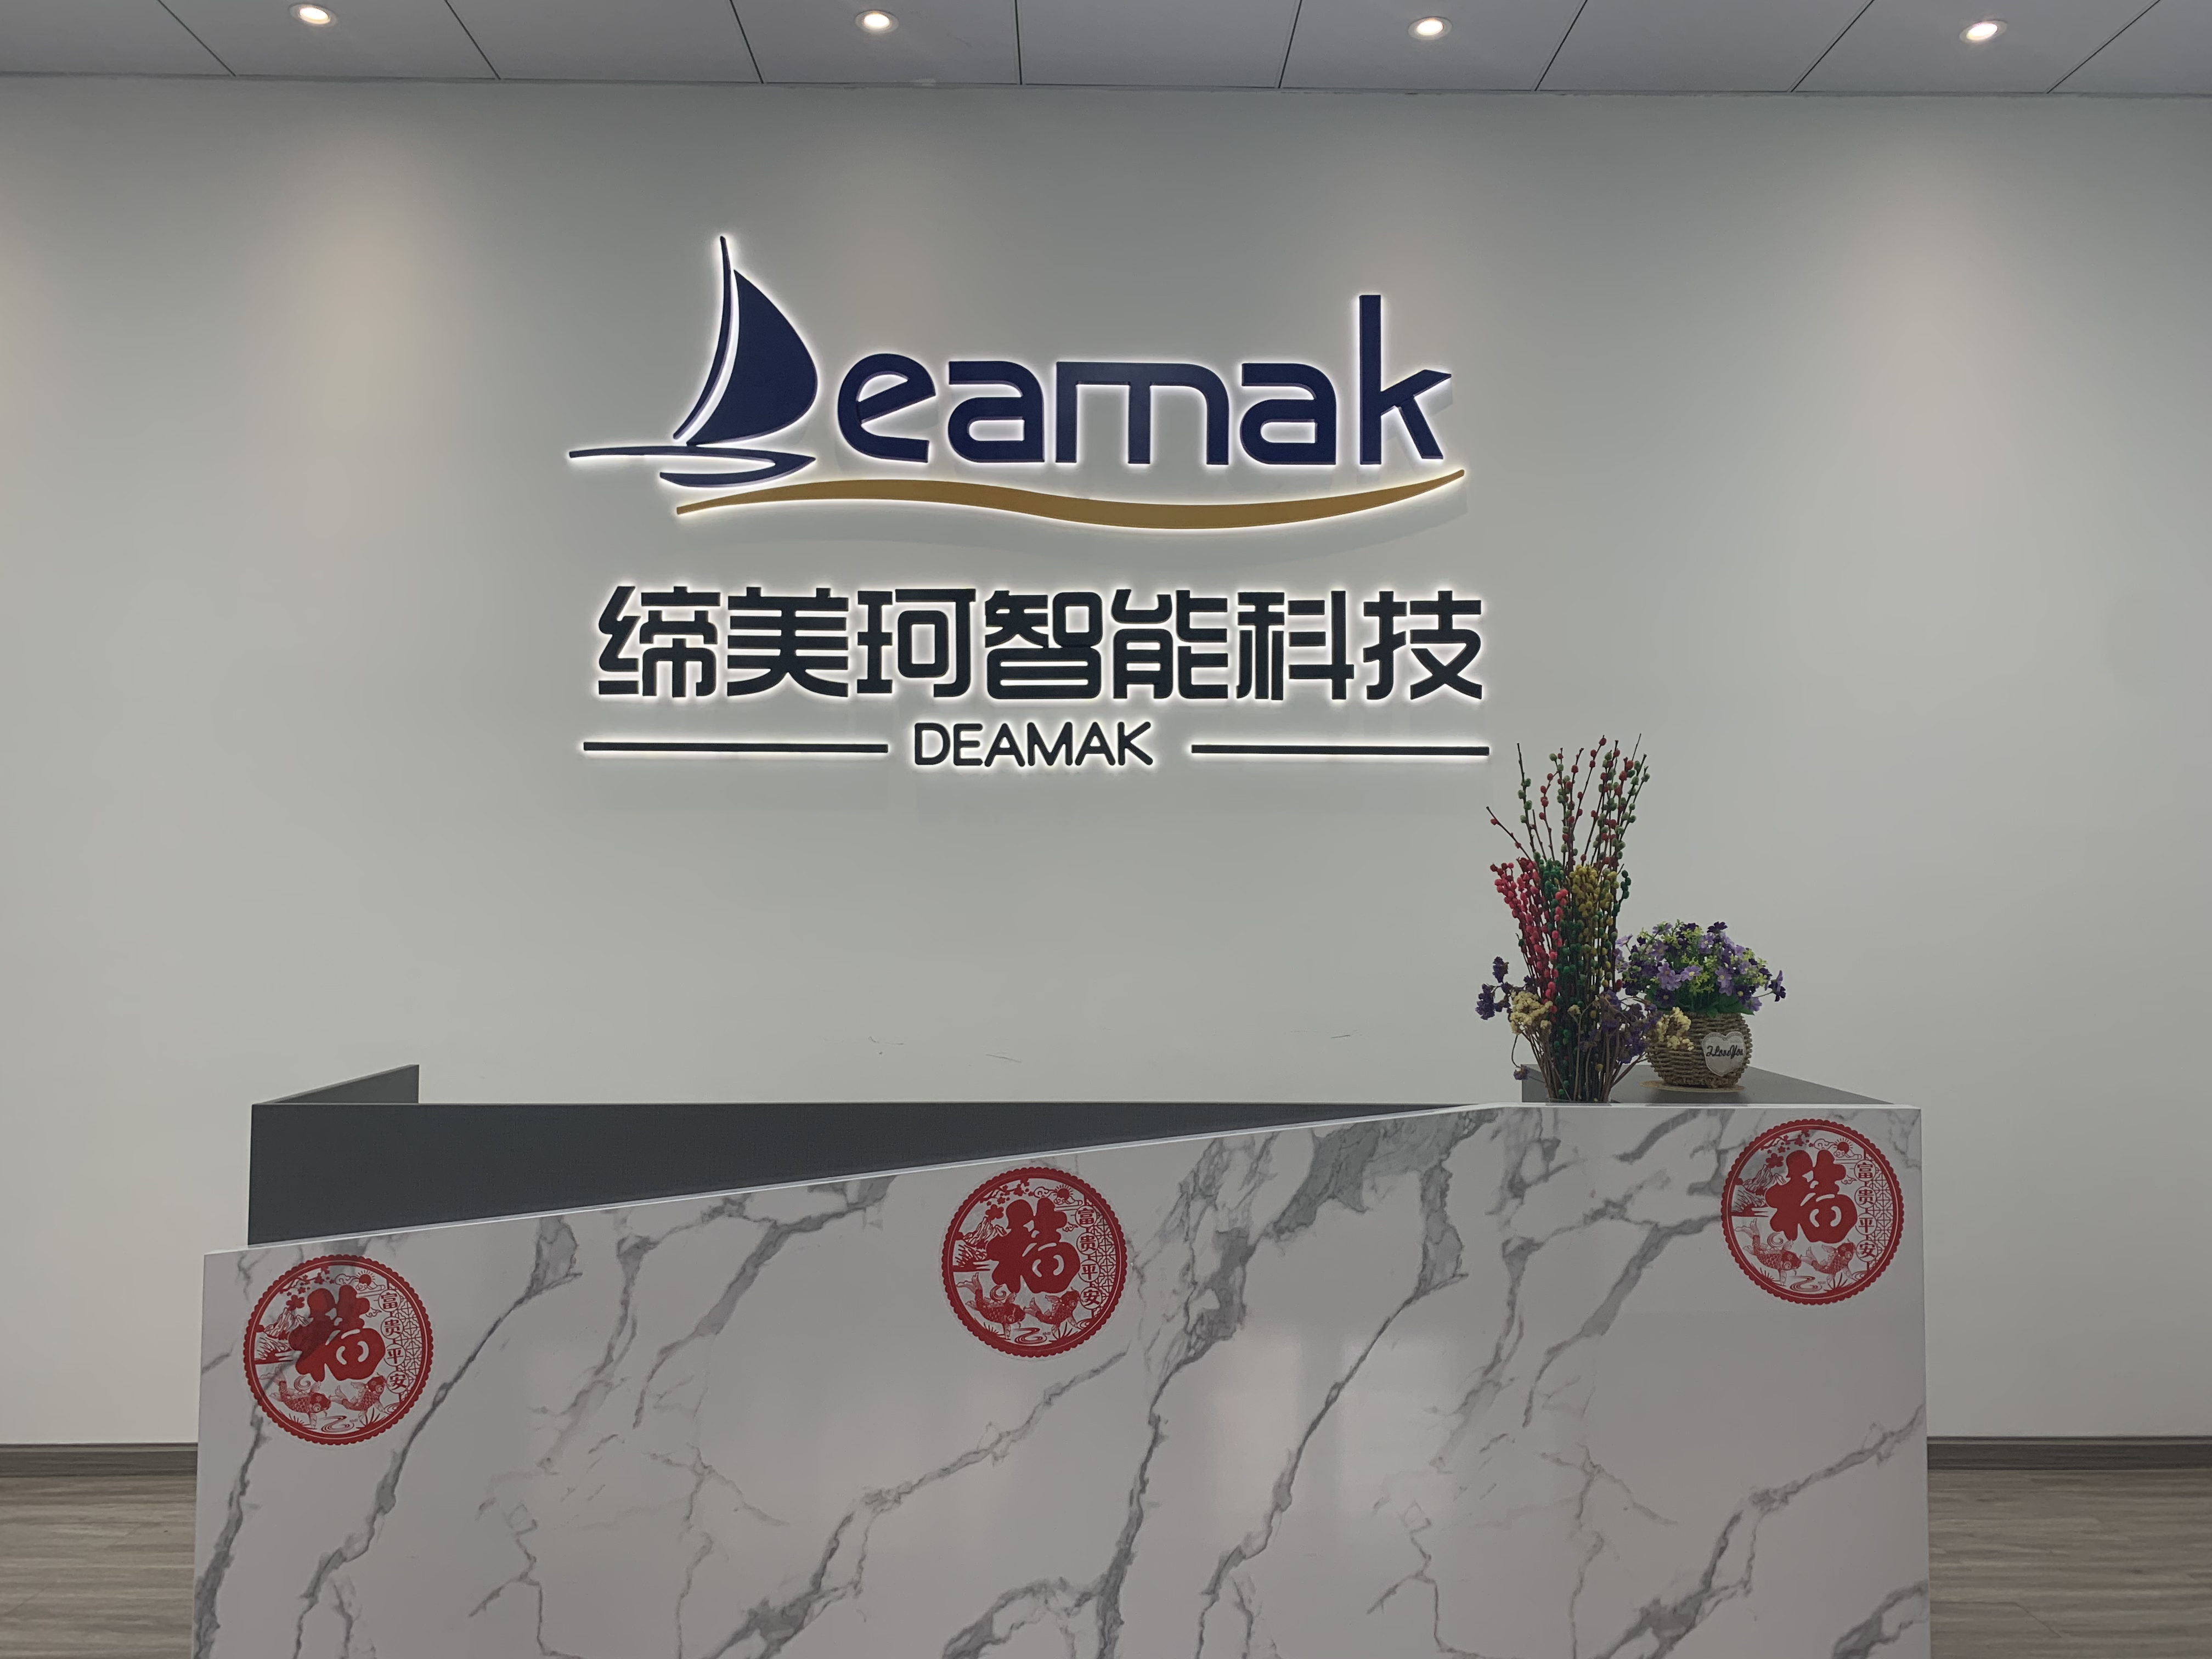 www.deamak.com